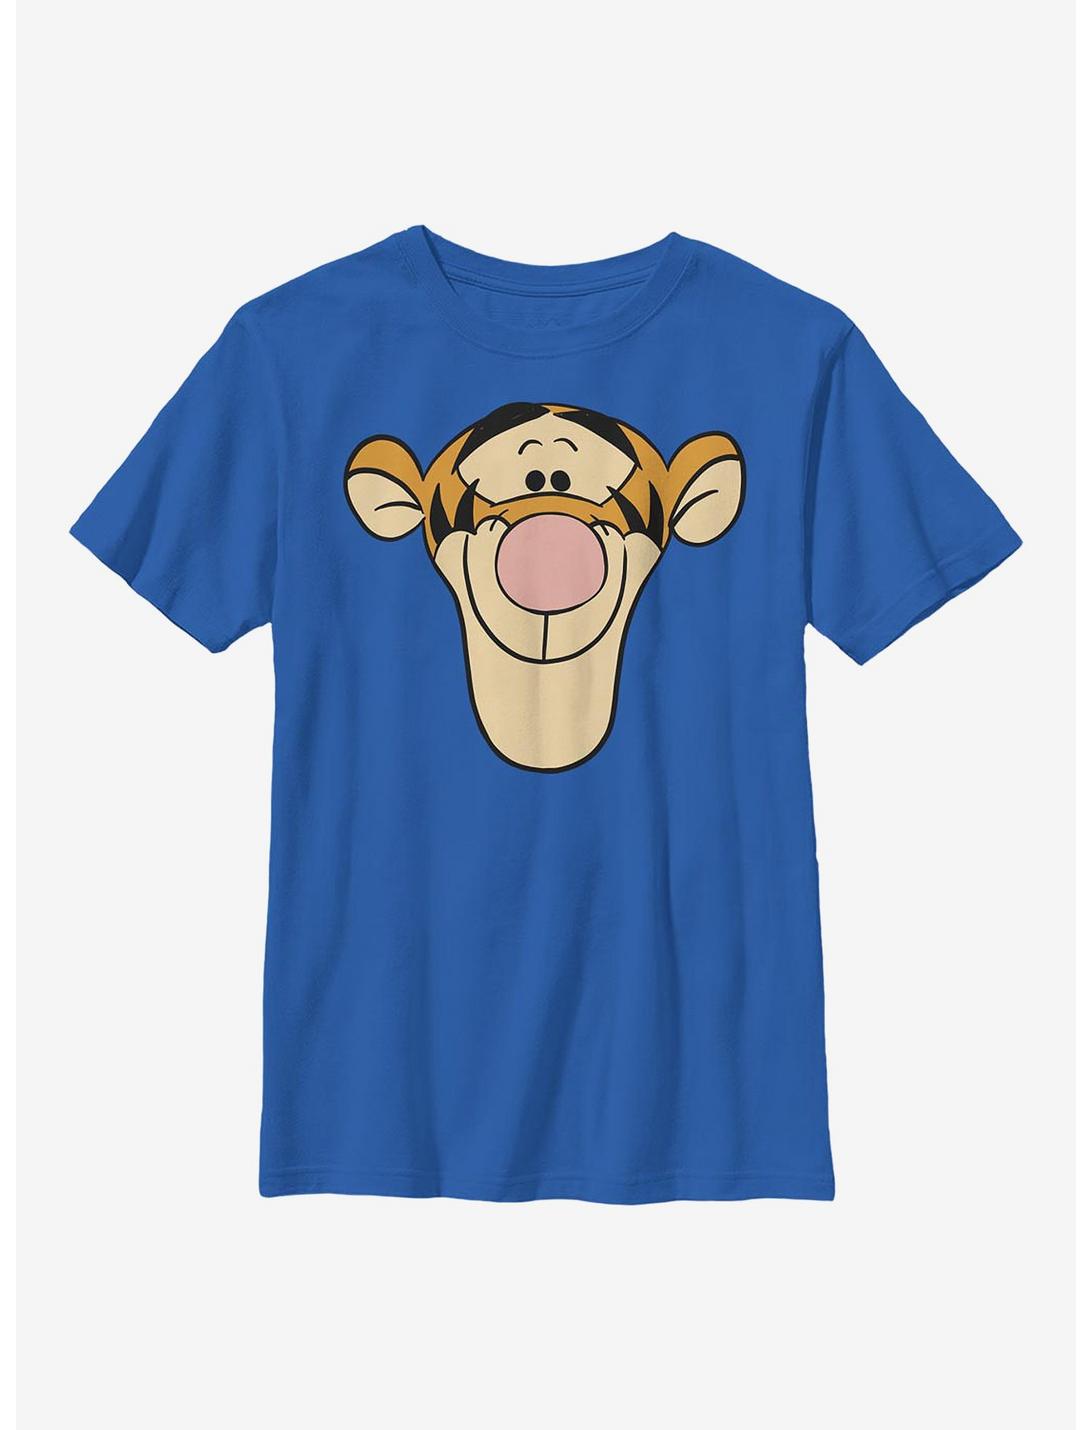 Disney Winnie The Pooh Tigger Big Face Youth T-Shirt, ROYAL, hi-res